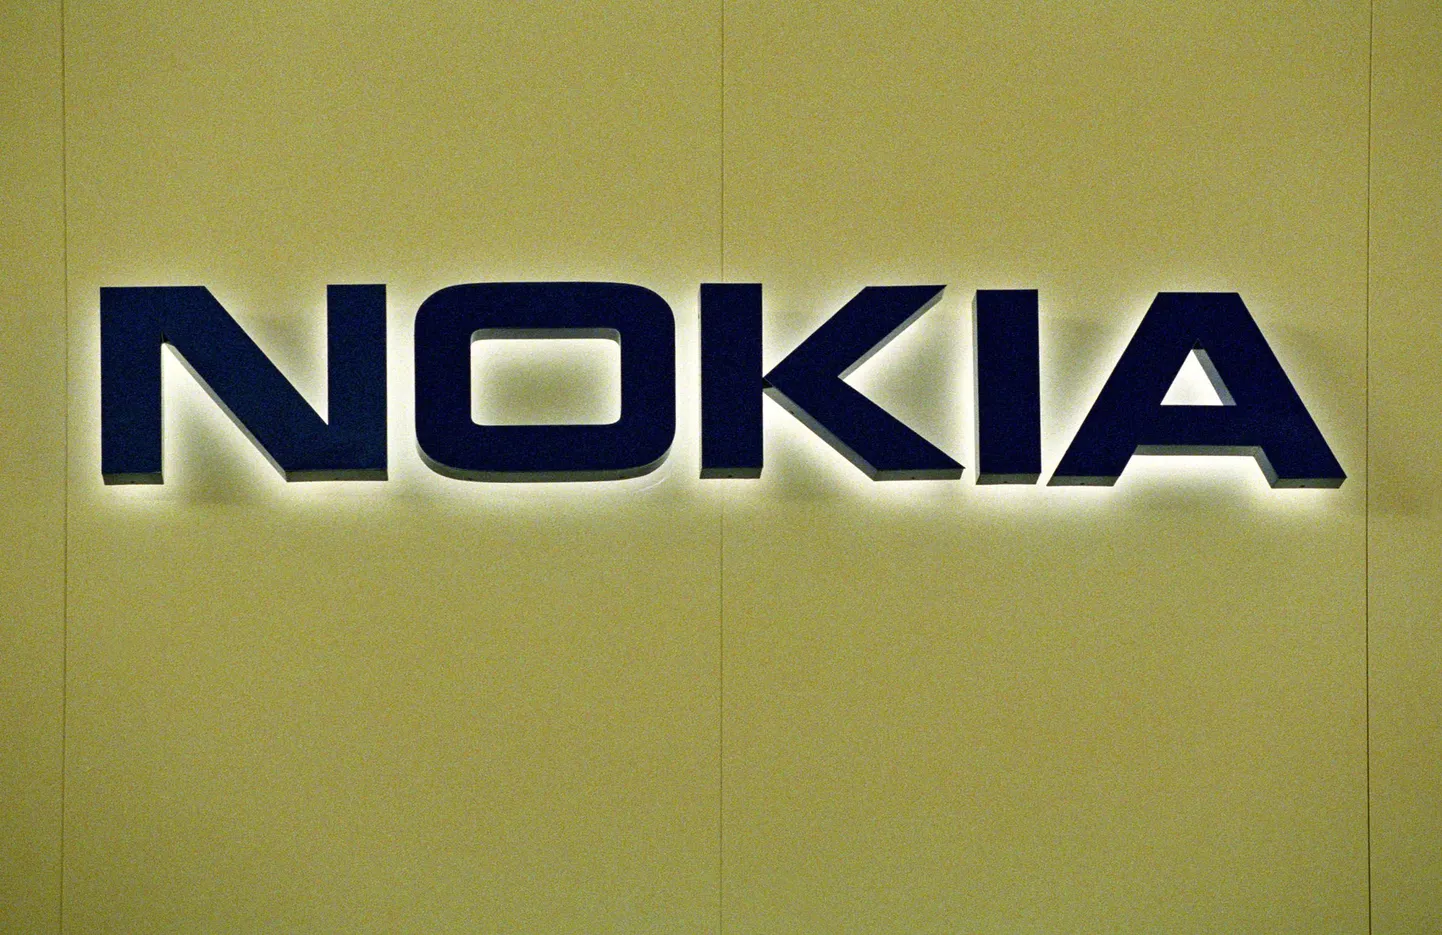 Nokia tunnistati Lätis kõige tuntumaks kaubamärgiks.